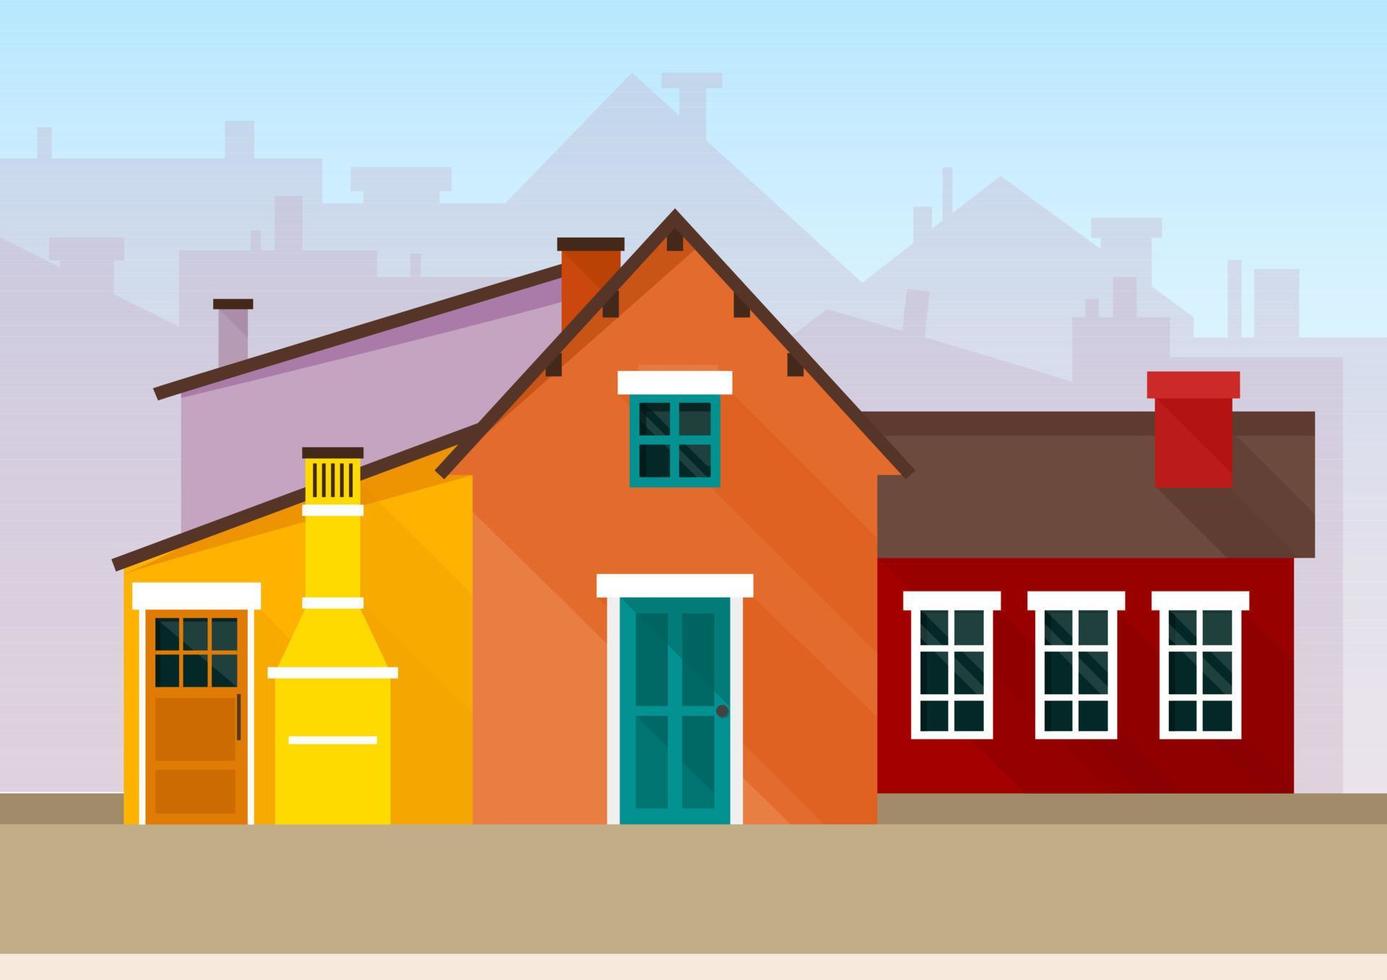 paisagem urbana de casas coloridas de amarelo brilhante, vermelho e laranja em estilo escandinavo vetor